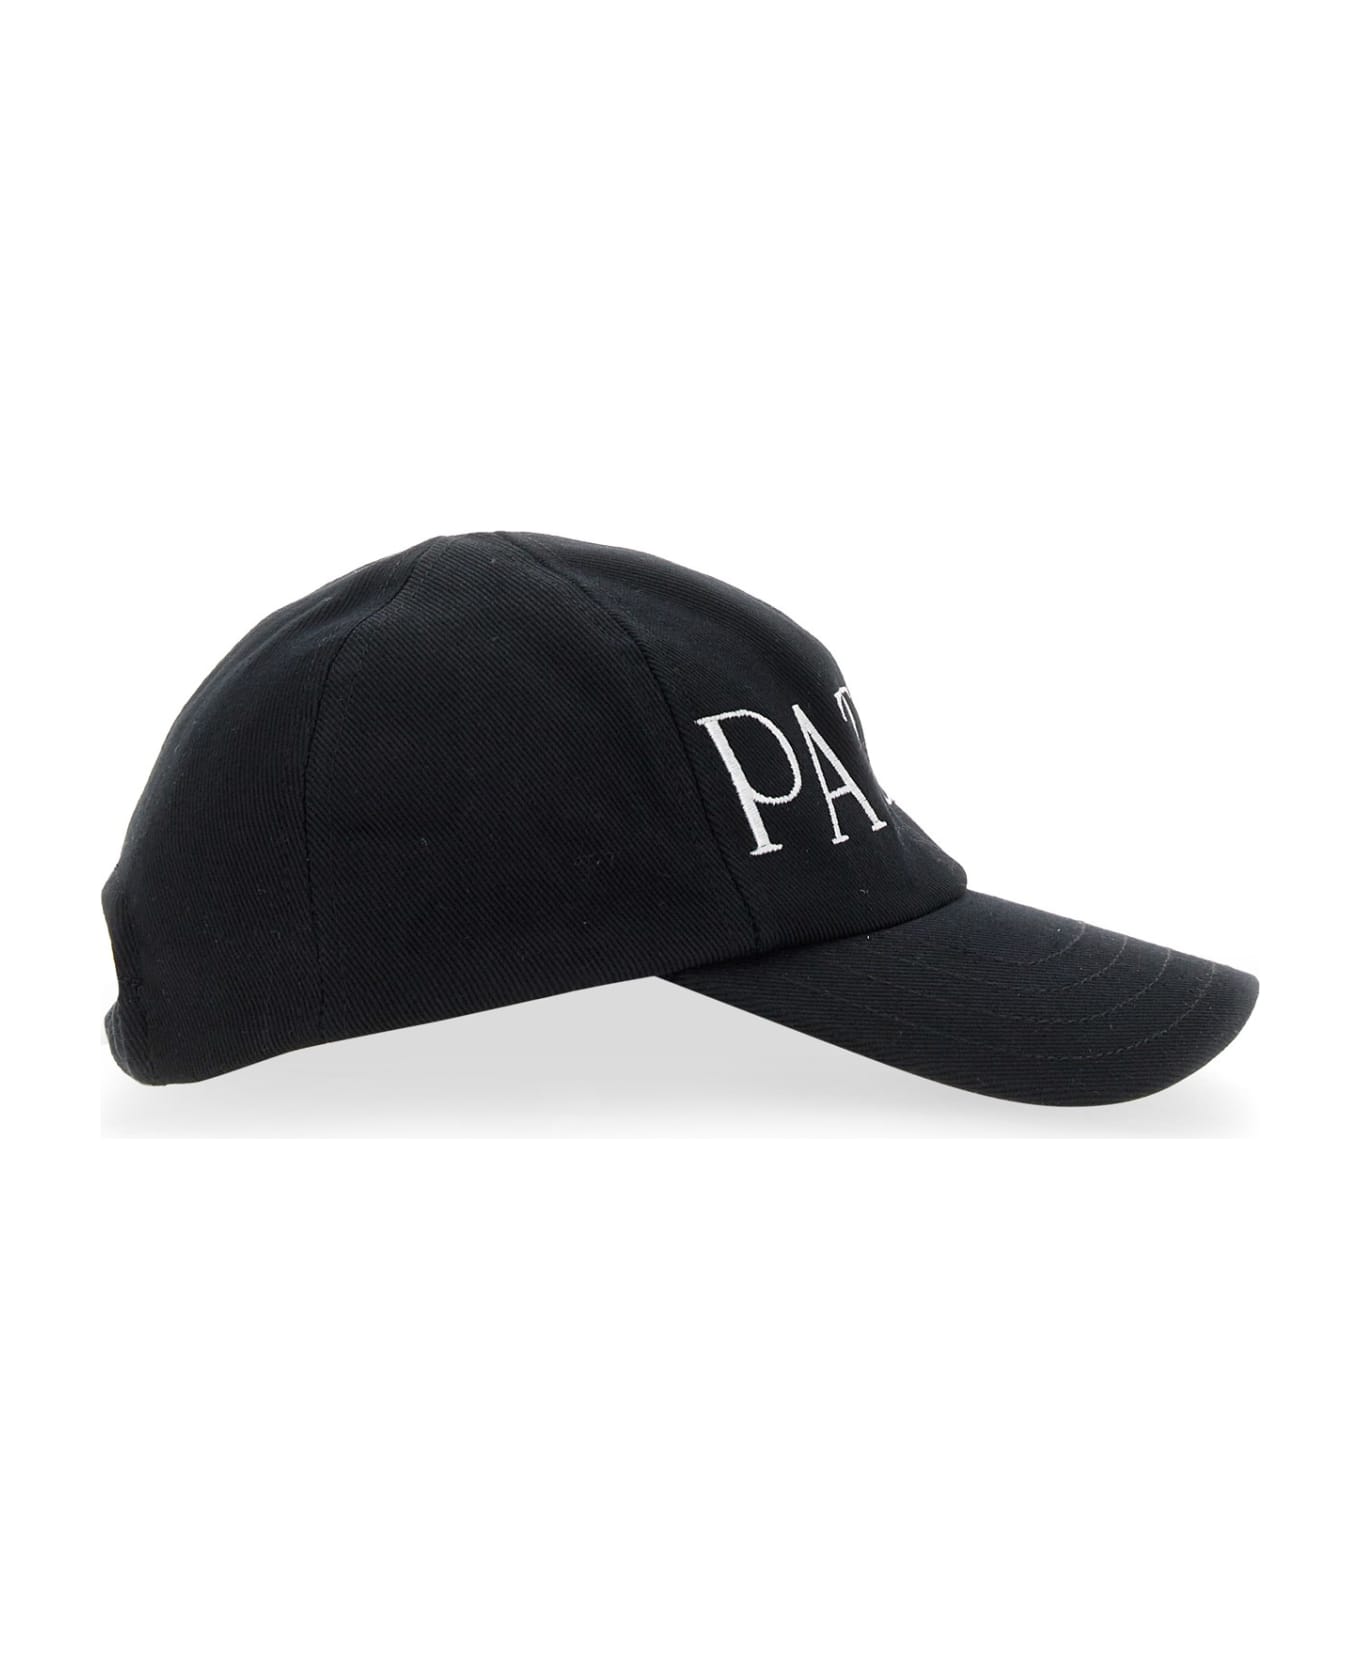 Patou Baseball Hat With Logo - BLACK